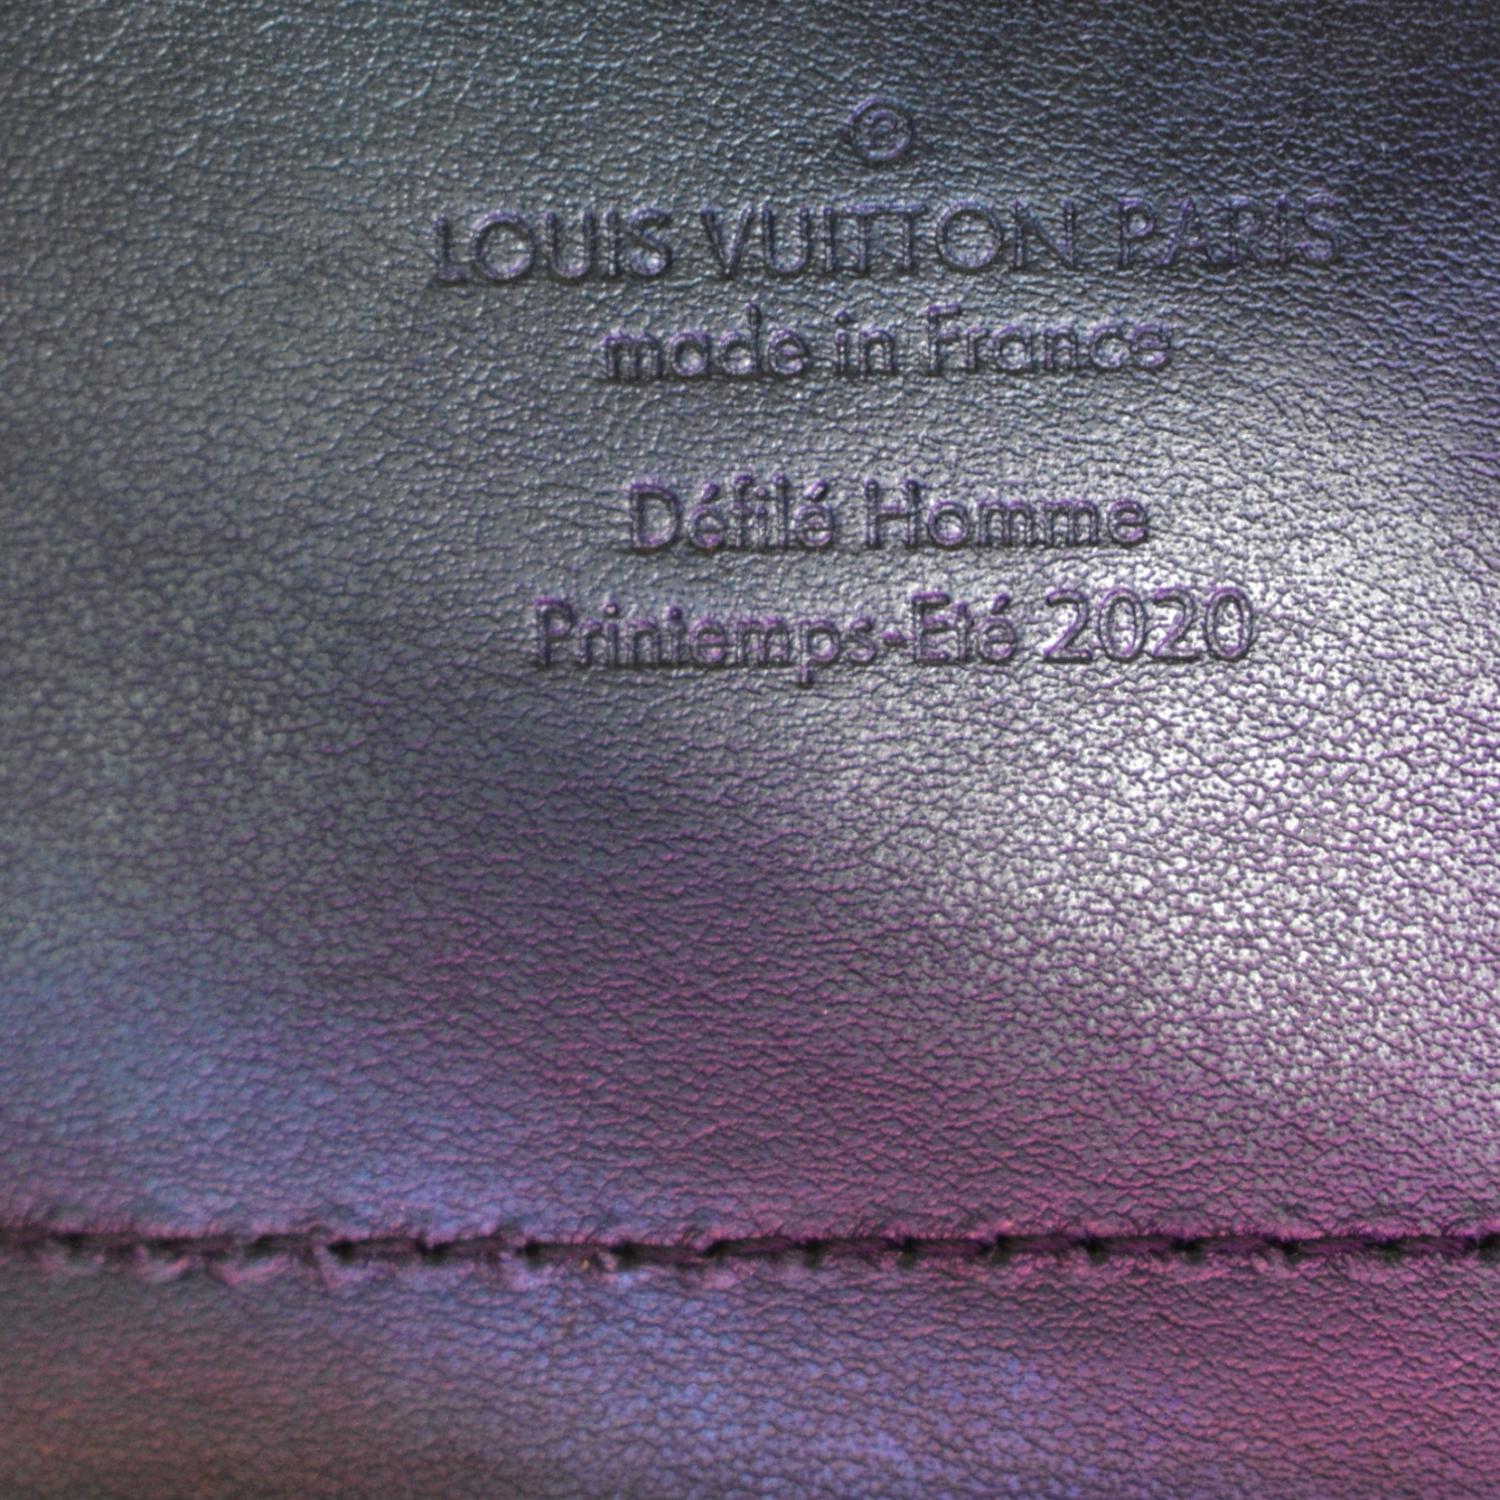 LOUIS VUITTON M55932 Monogram prism Soft Trunk Shoulder Bag